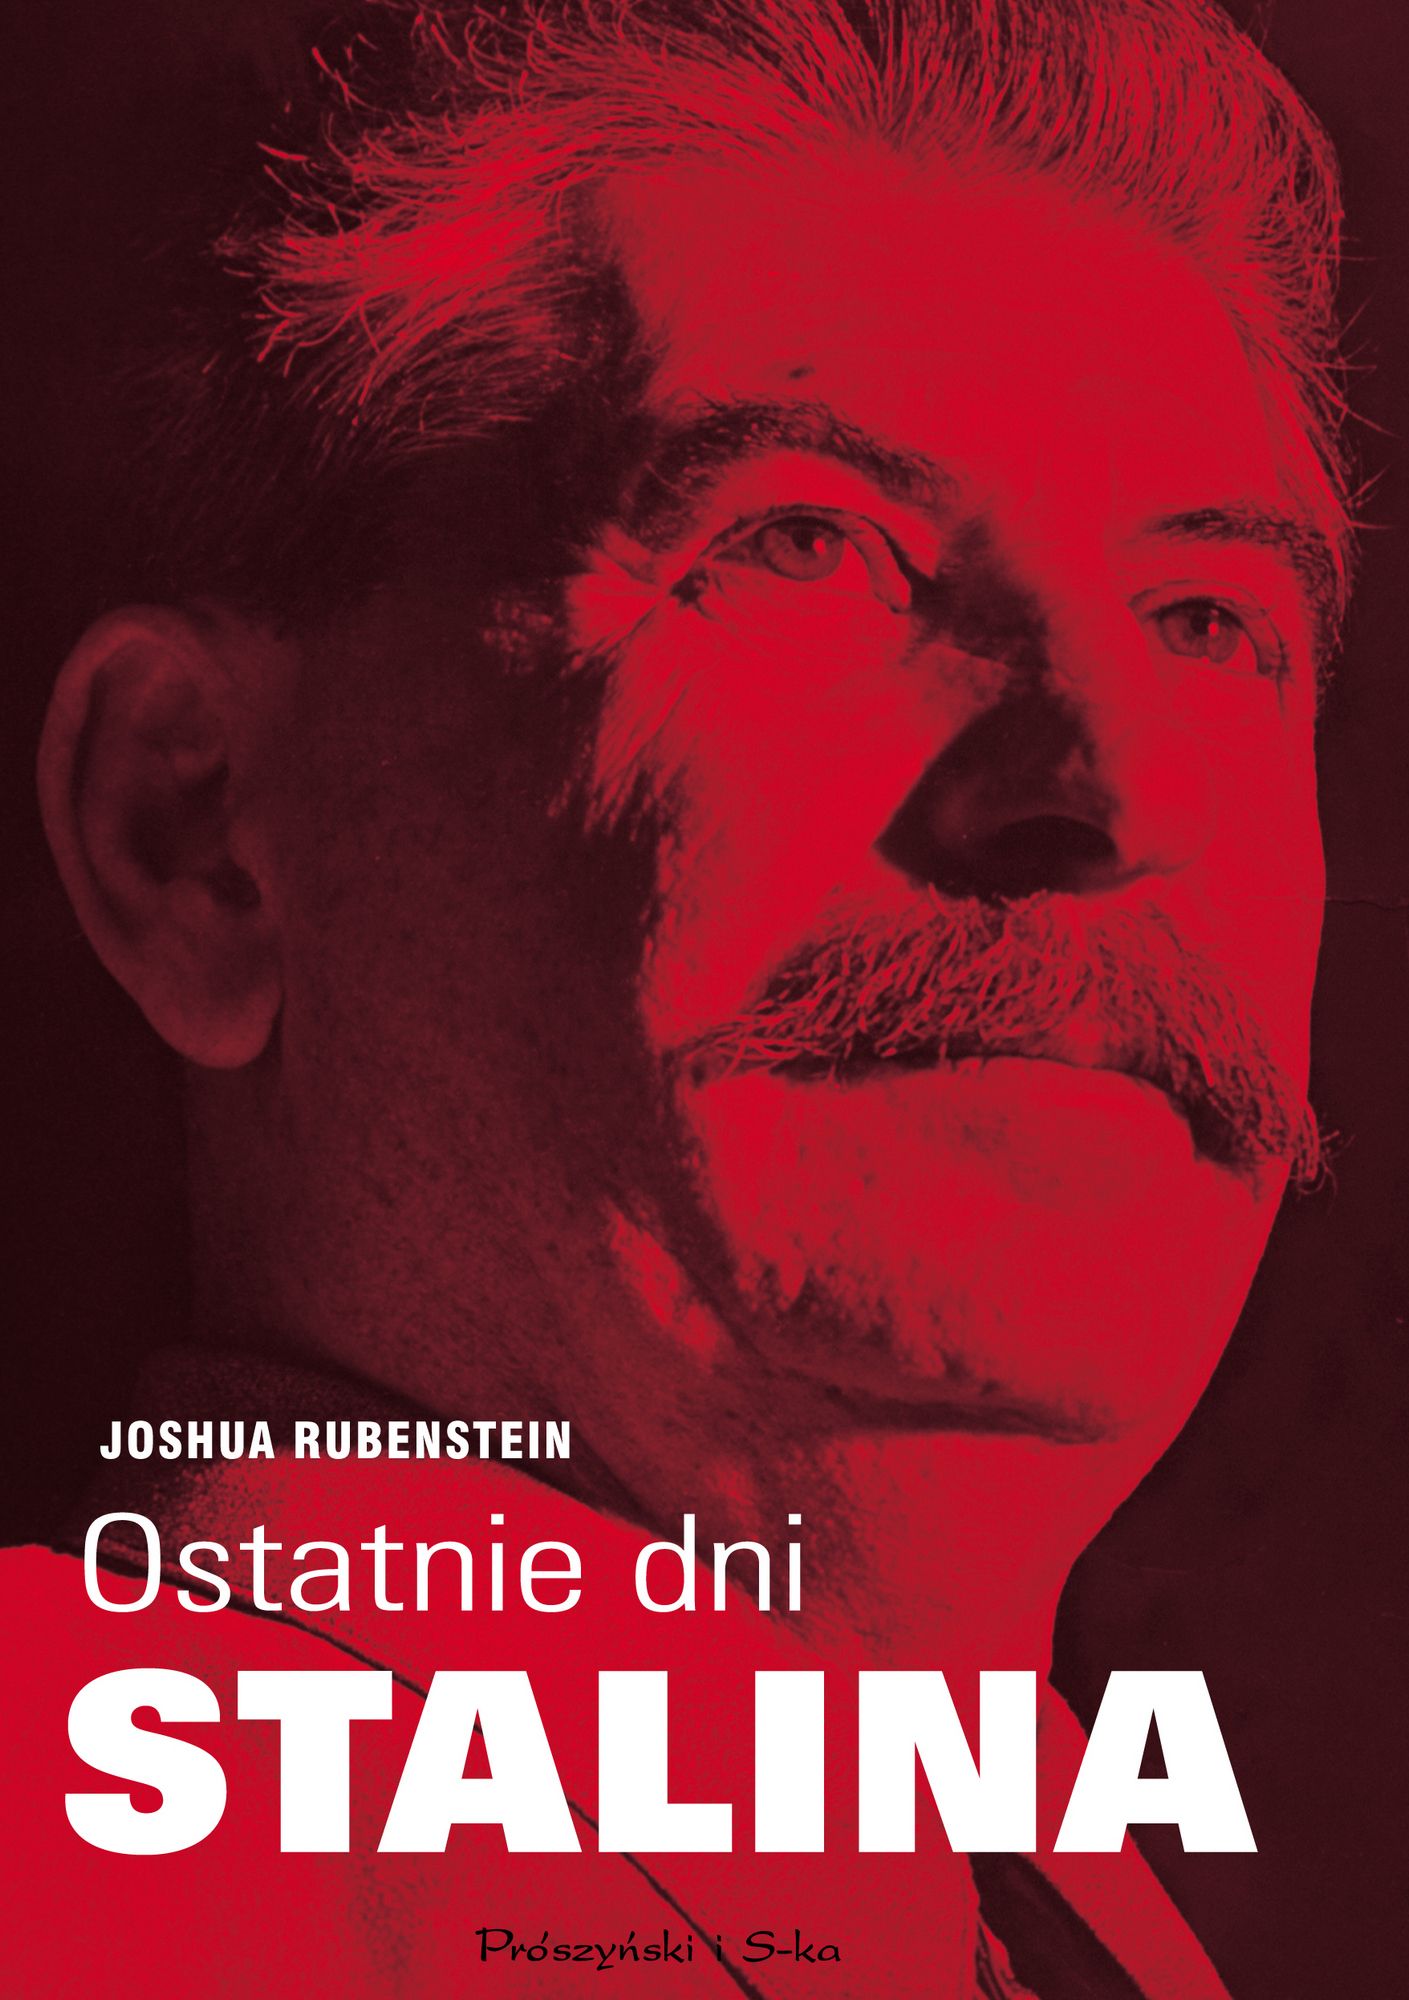 Artykuł został zainspirowany książką Joshua Rubensteina Ostatnie dni Stalina, opowiadającą o ostatnich miesiącach dyktatora.